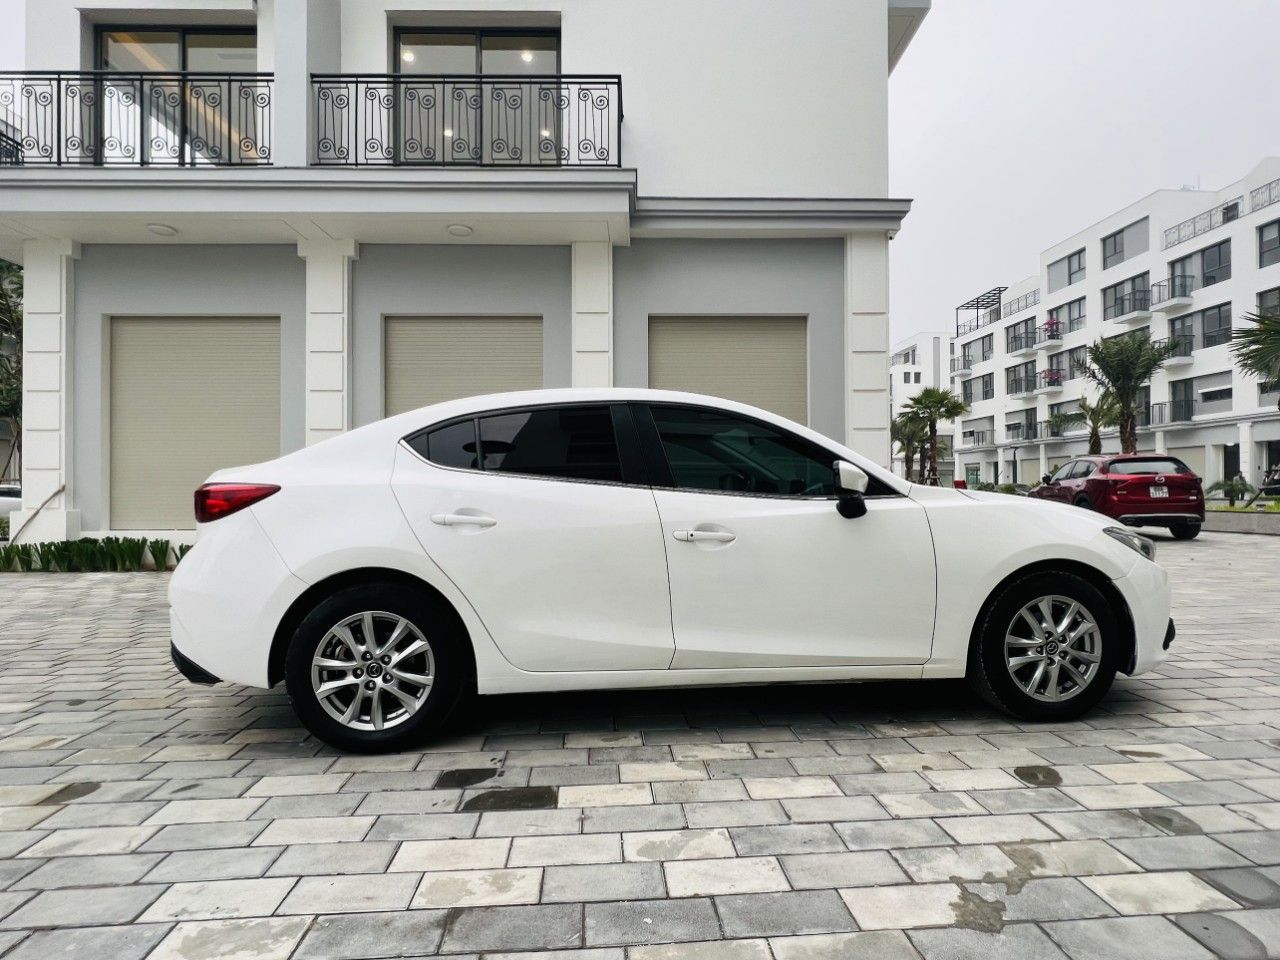 Mazda 3 2016 - Quảng Ninh - xe gia đình chạy ít, bảo dưỡng hãng định kỳ, zin 100%, liên hệ xem xe ngay